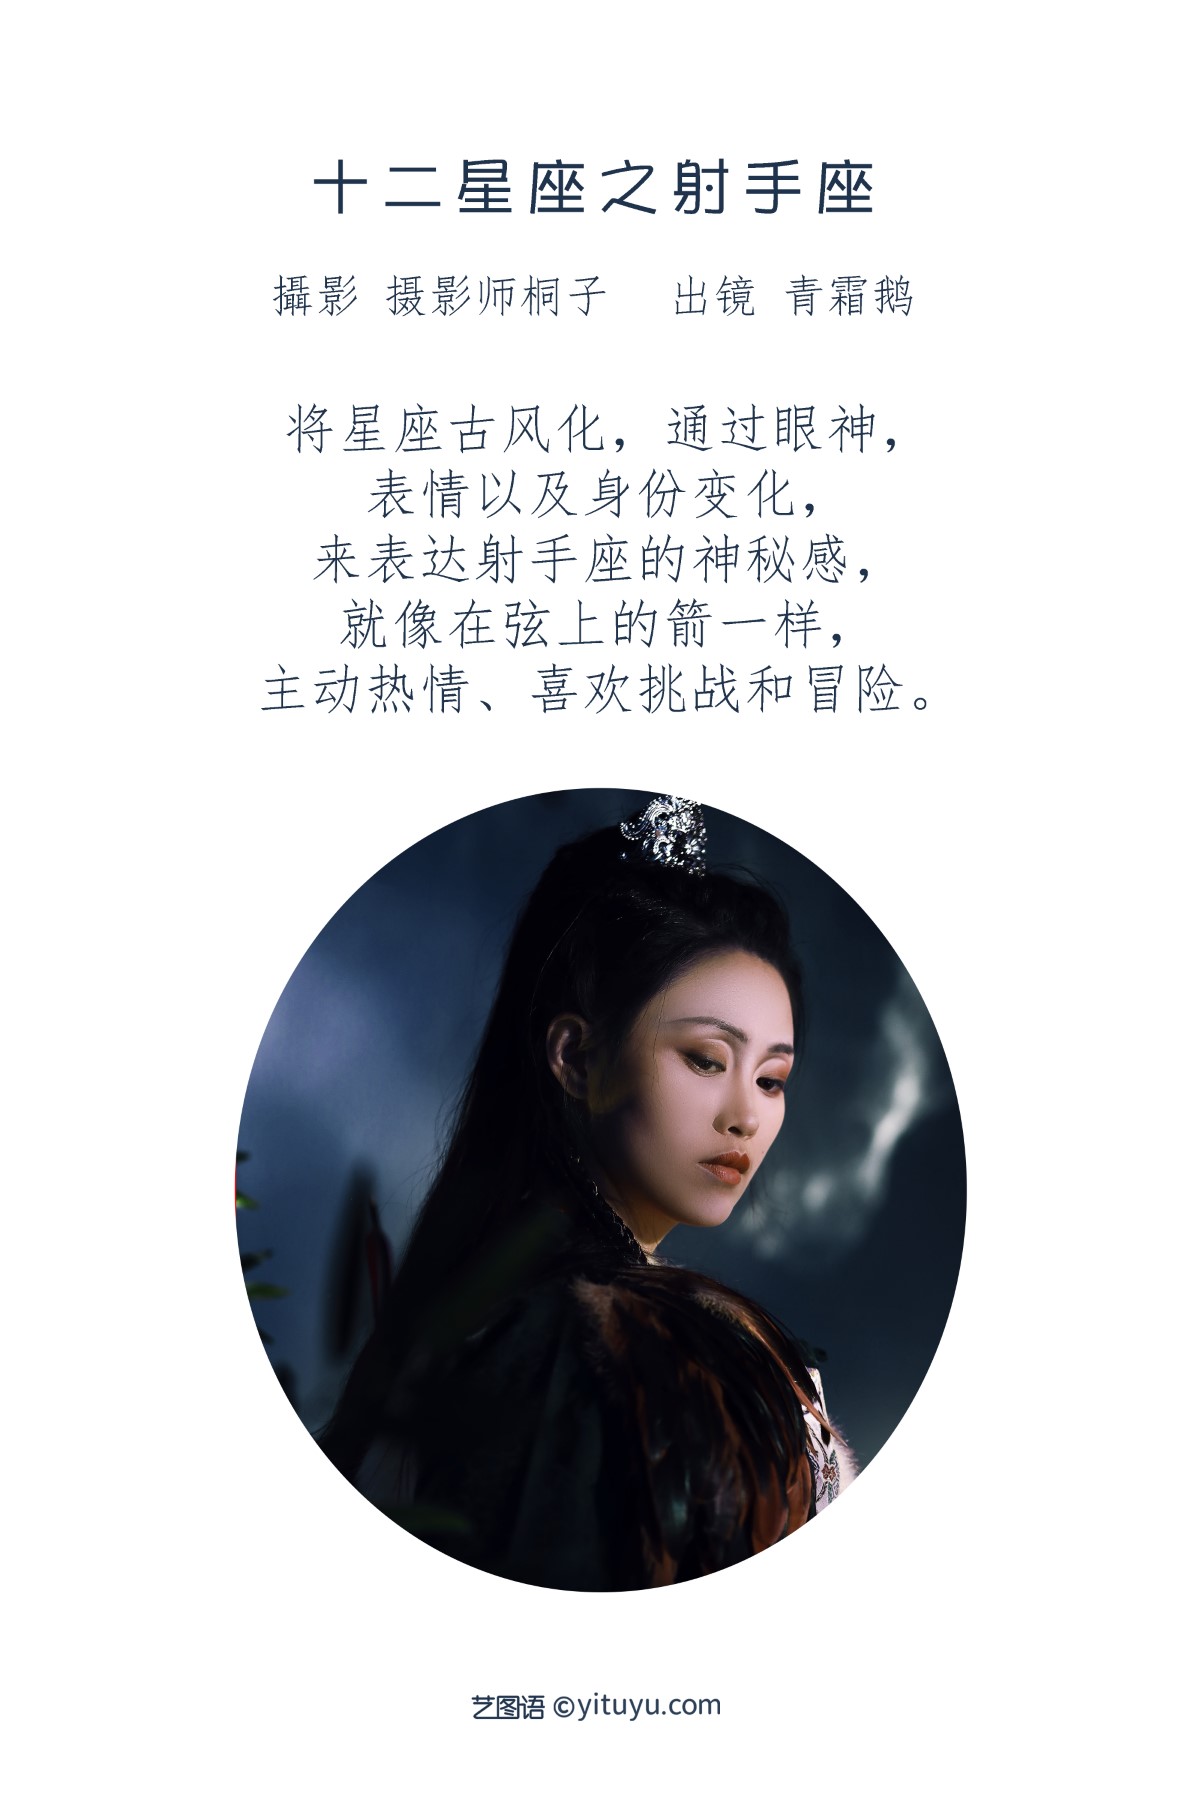 YiTuYu艺图语 Vol 1867 Qing Shuang e 0001 3063269154.jpg